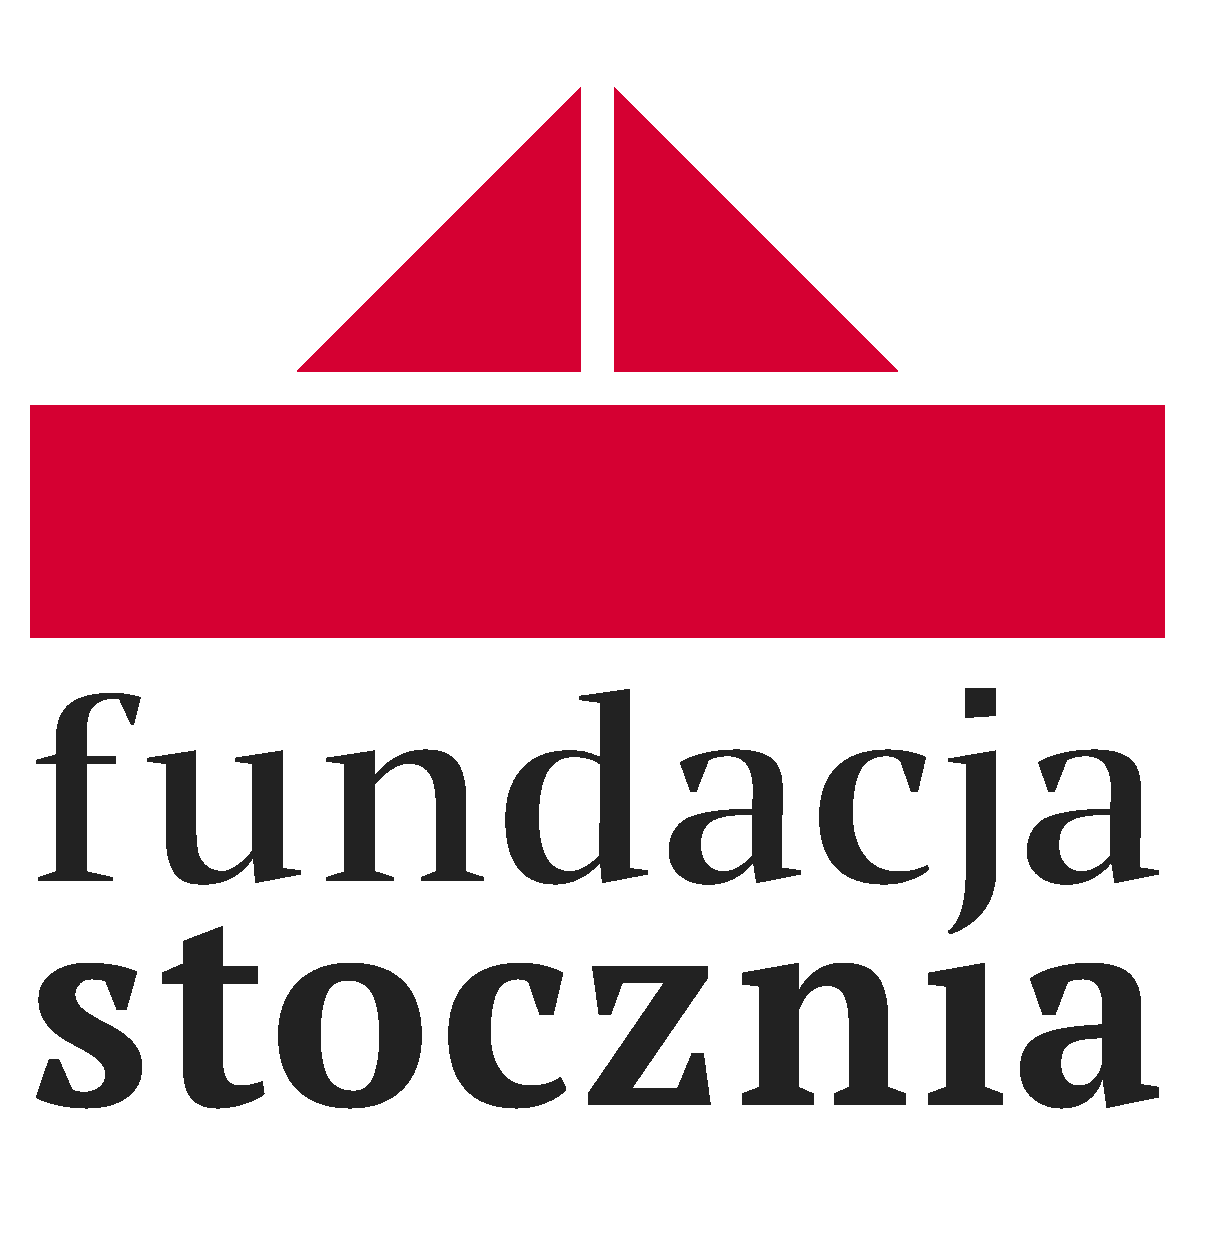 logotyp Fundacja Stocznia